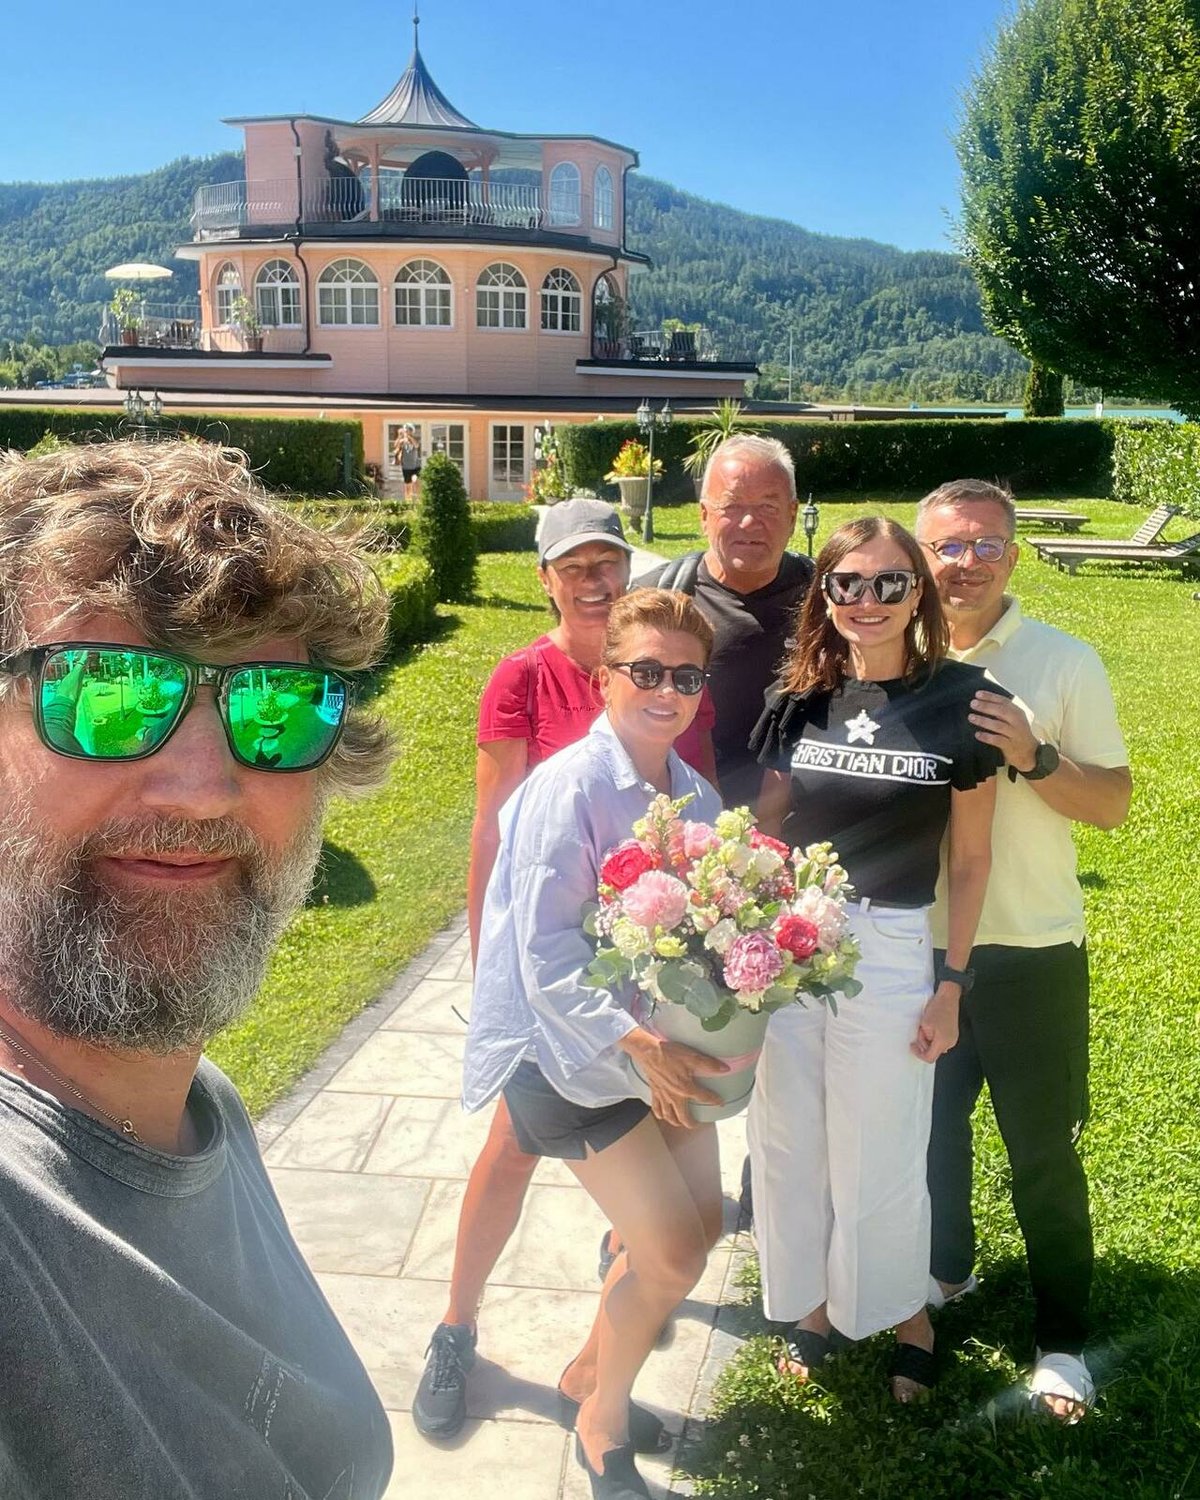 Dana Morávková s manželem najezdili na dovolené v Rakousku přes 400 km na kolech a Dana tam oslavila naorueniny